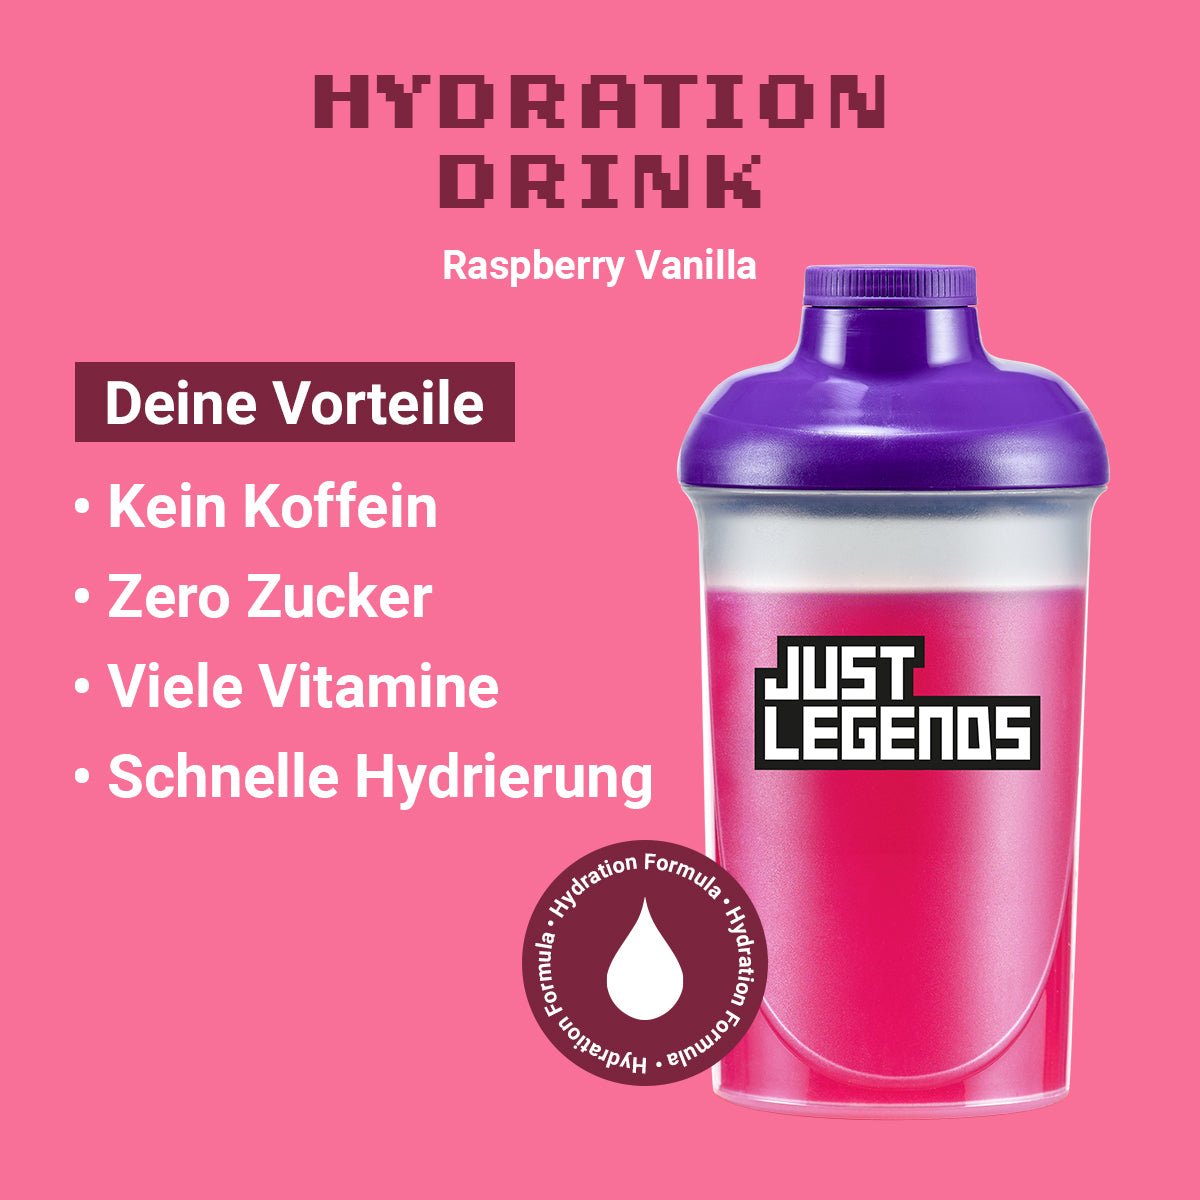 Just Legends Hydration Drink Raspberry Vanilla | Funktionaler, veganer Hydration Drink auf Pulverbasis ohne Zucker, mit wenig Kalorien, vielen Vitaminen und natürlichen Aromen.